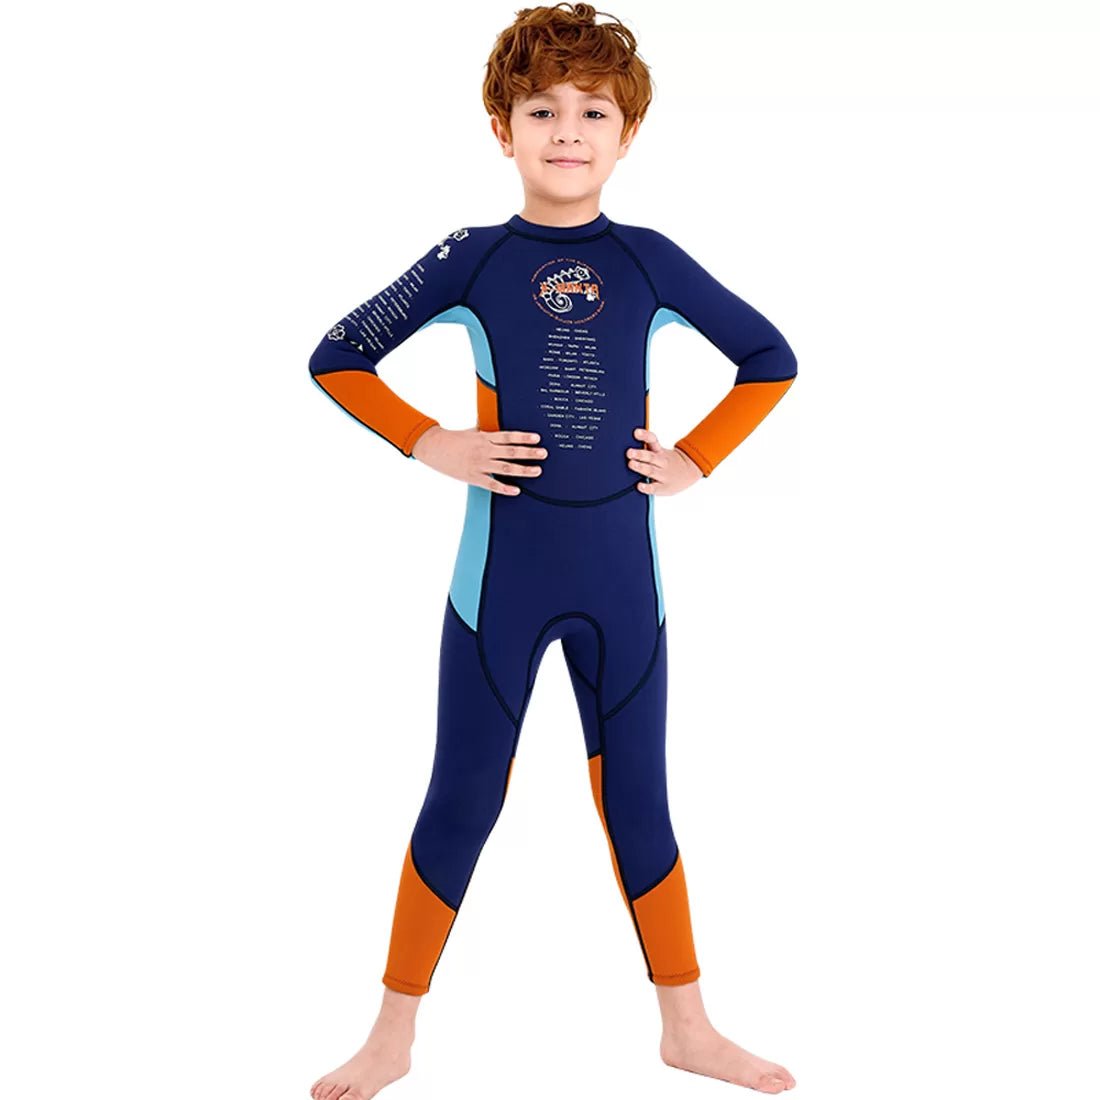 2.55mm Neoprene Full Length Kids Swimsuit, Blue & Bold Orange with UV protection - Little Surprise Box2.55mm Neoprene Full Length Kids Swimsuit, Blue & Bold Orange with UV protection